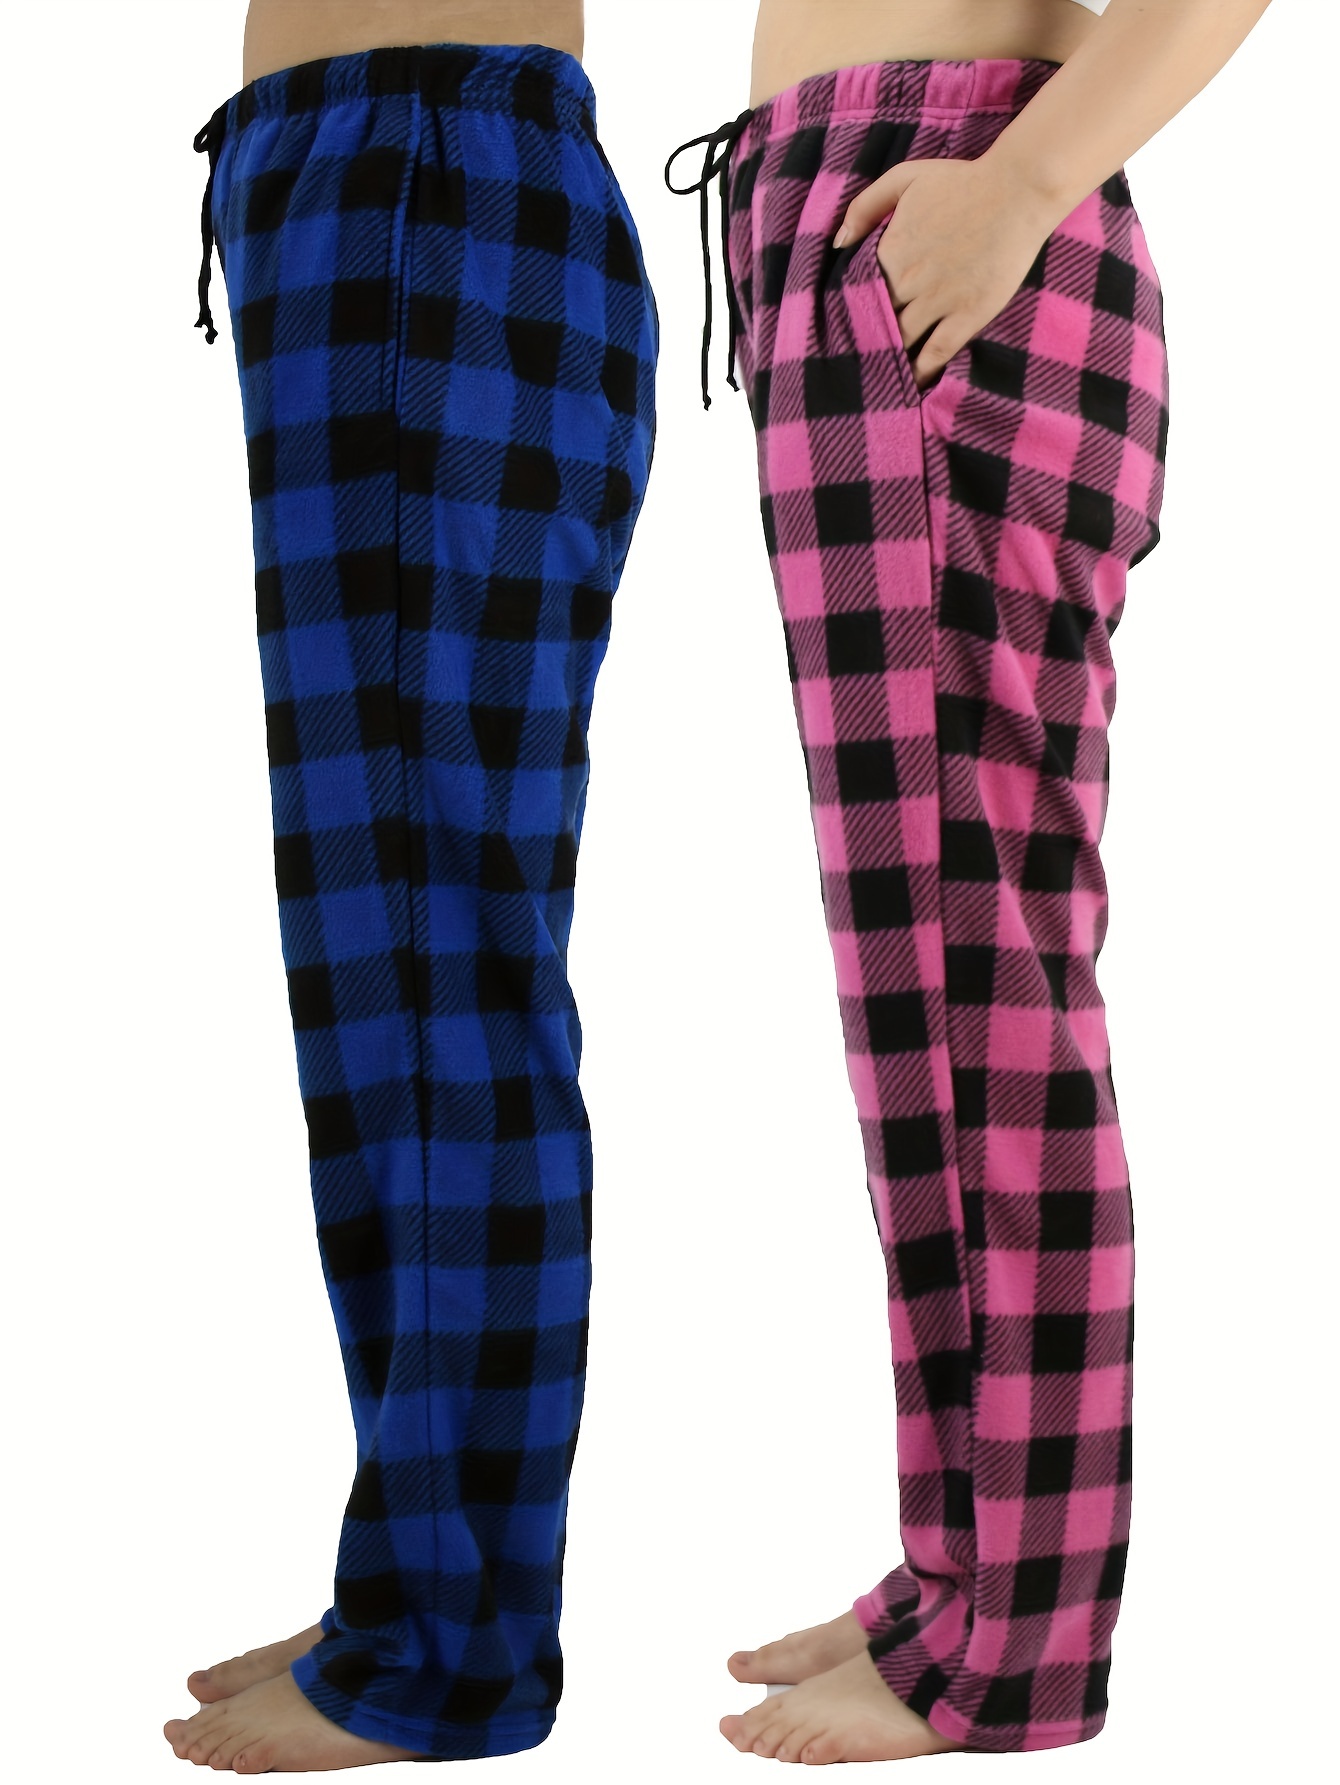 Plus Size Women Lounge Pants Modal Cotton Comfy Homewear Loose Wide Leg  Sleepwear Pajama Plaid Trousers 5xl 4xl Xxxl Black Pink